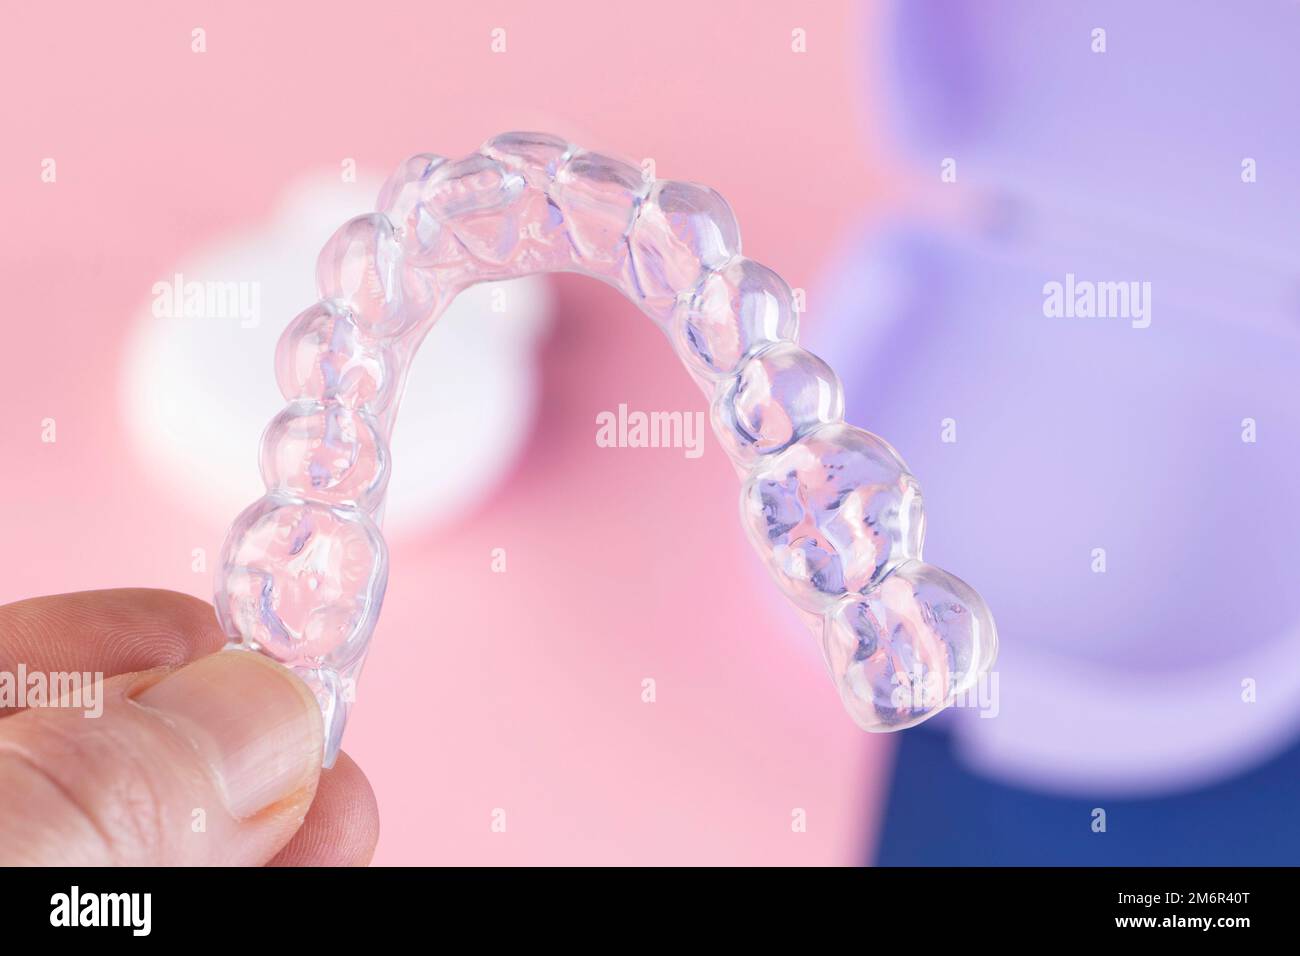 Trattamento ortodontico, bretelle invisibili, nuova tecnologia ortodontica, stecca occlusale Foto Stock